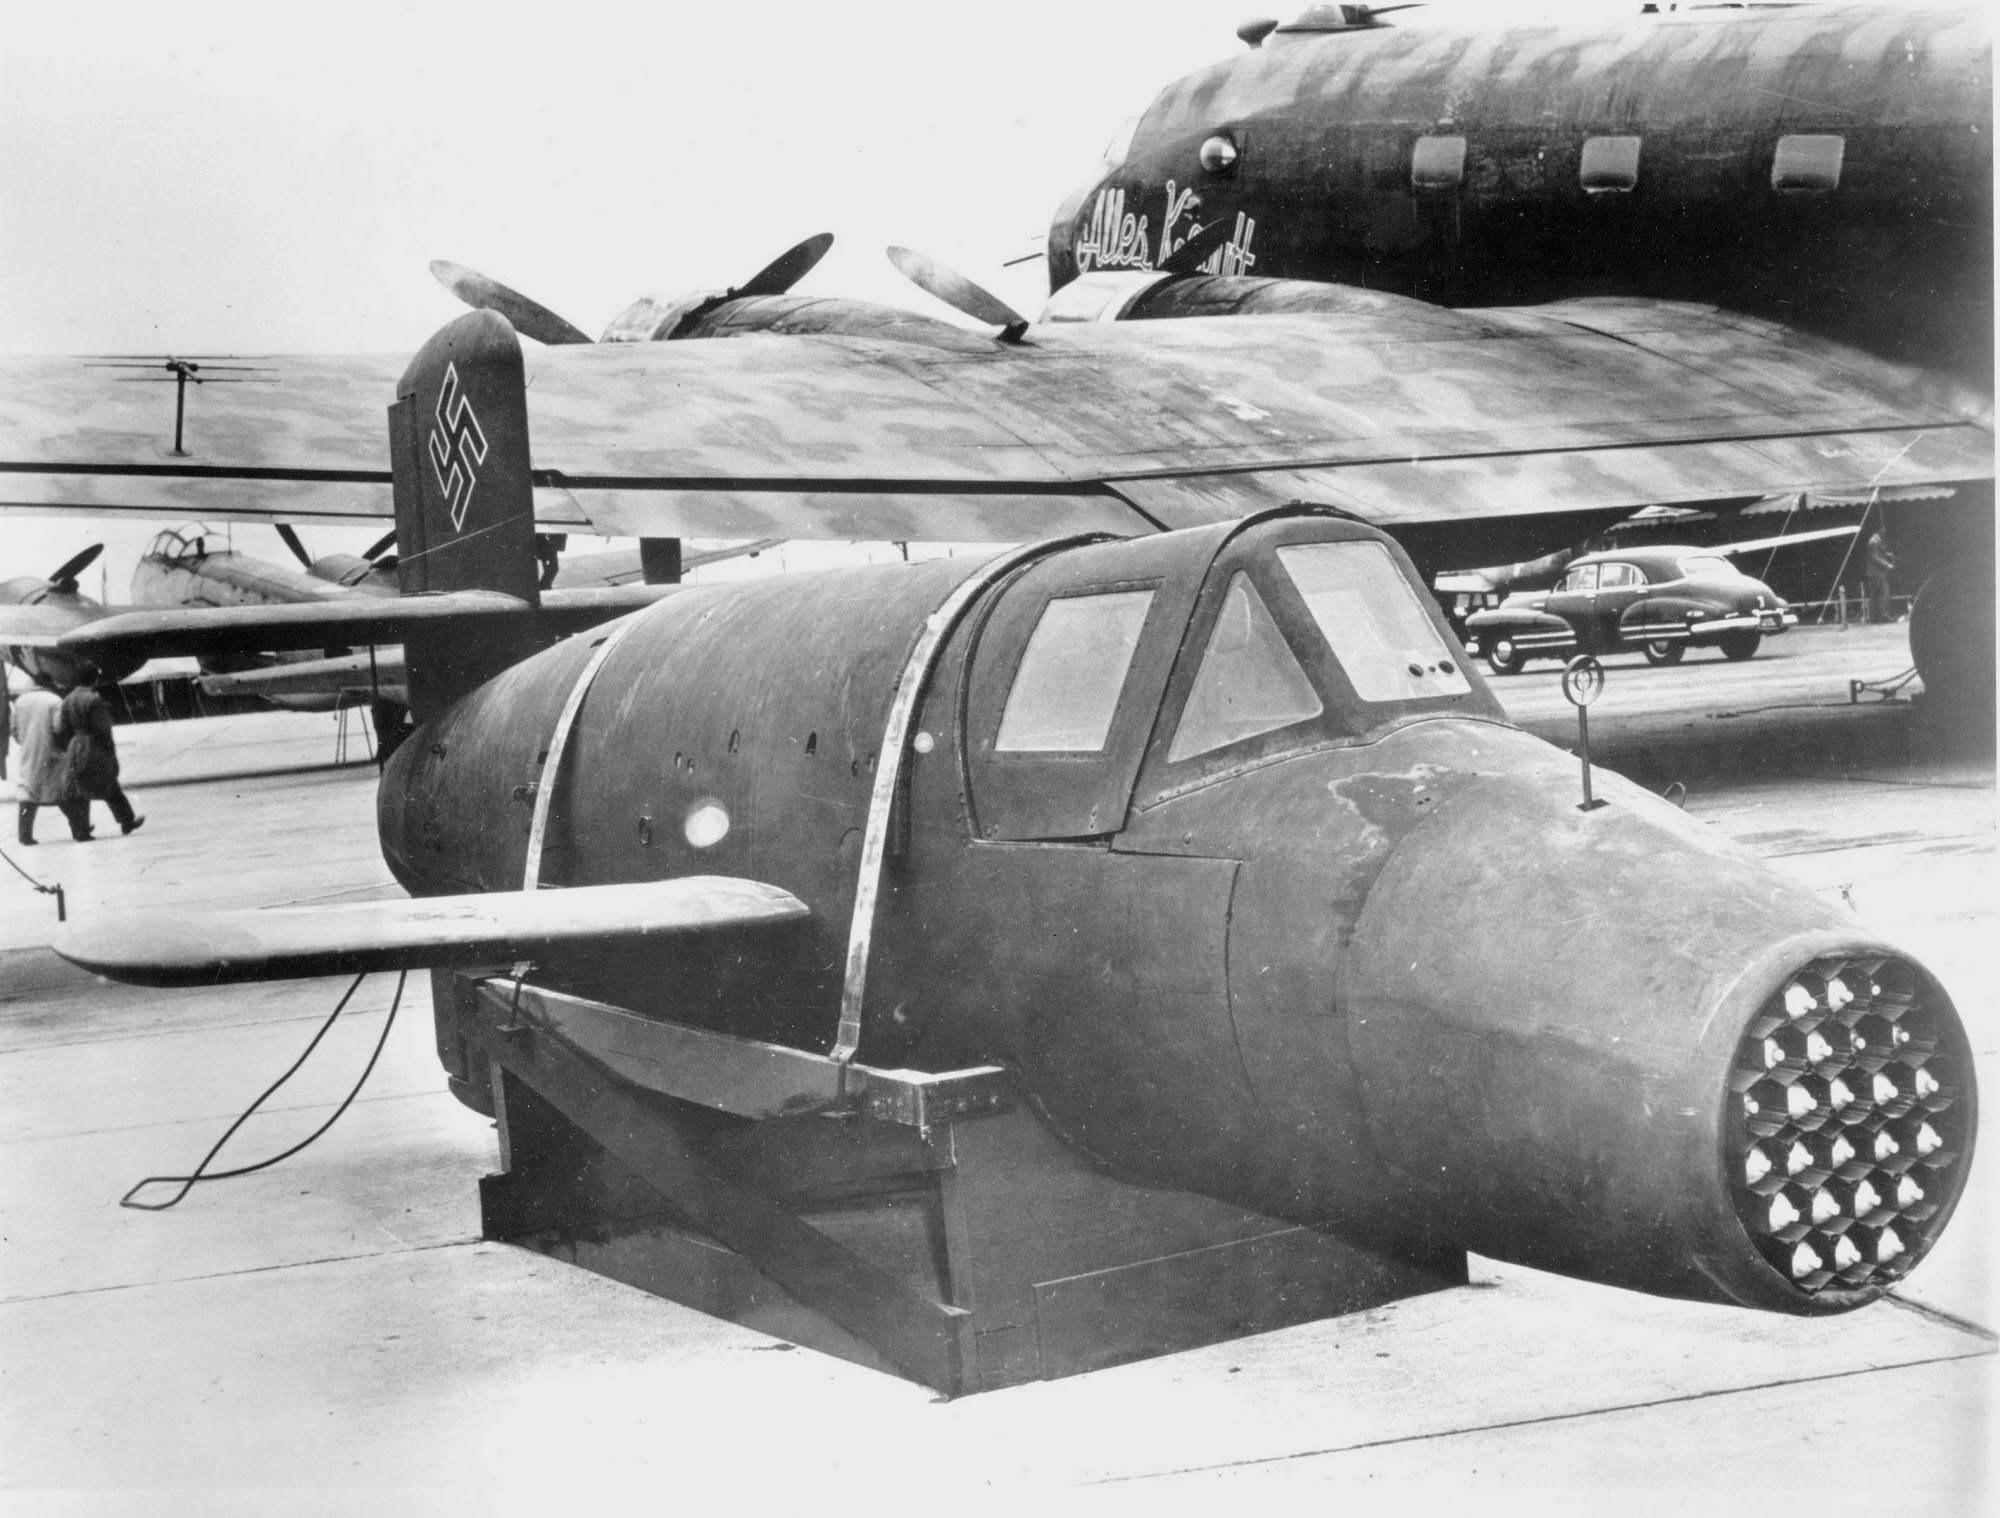 造型怪诞的Ba-349截击机